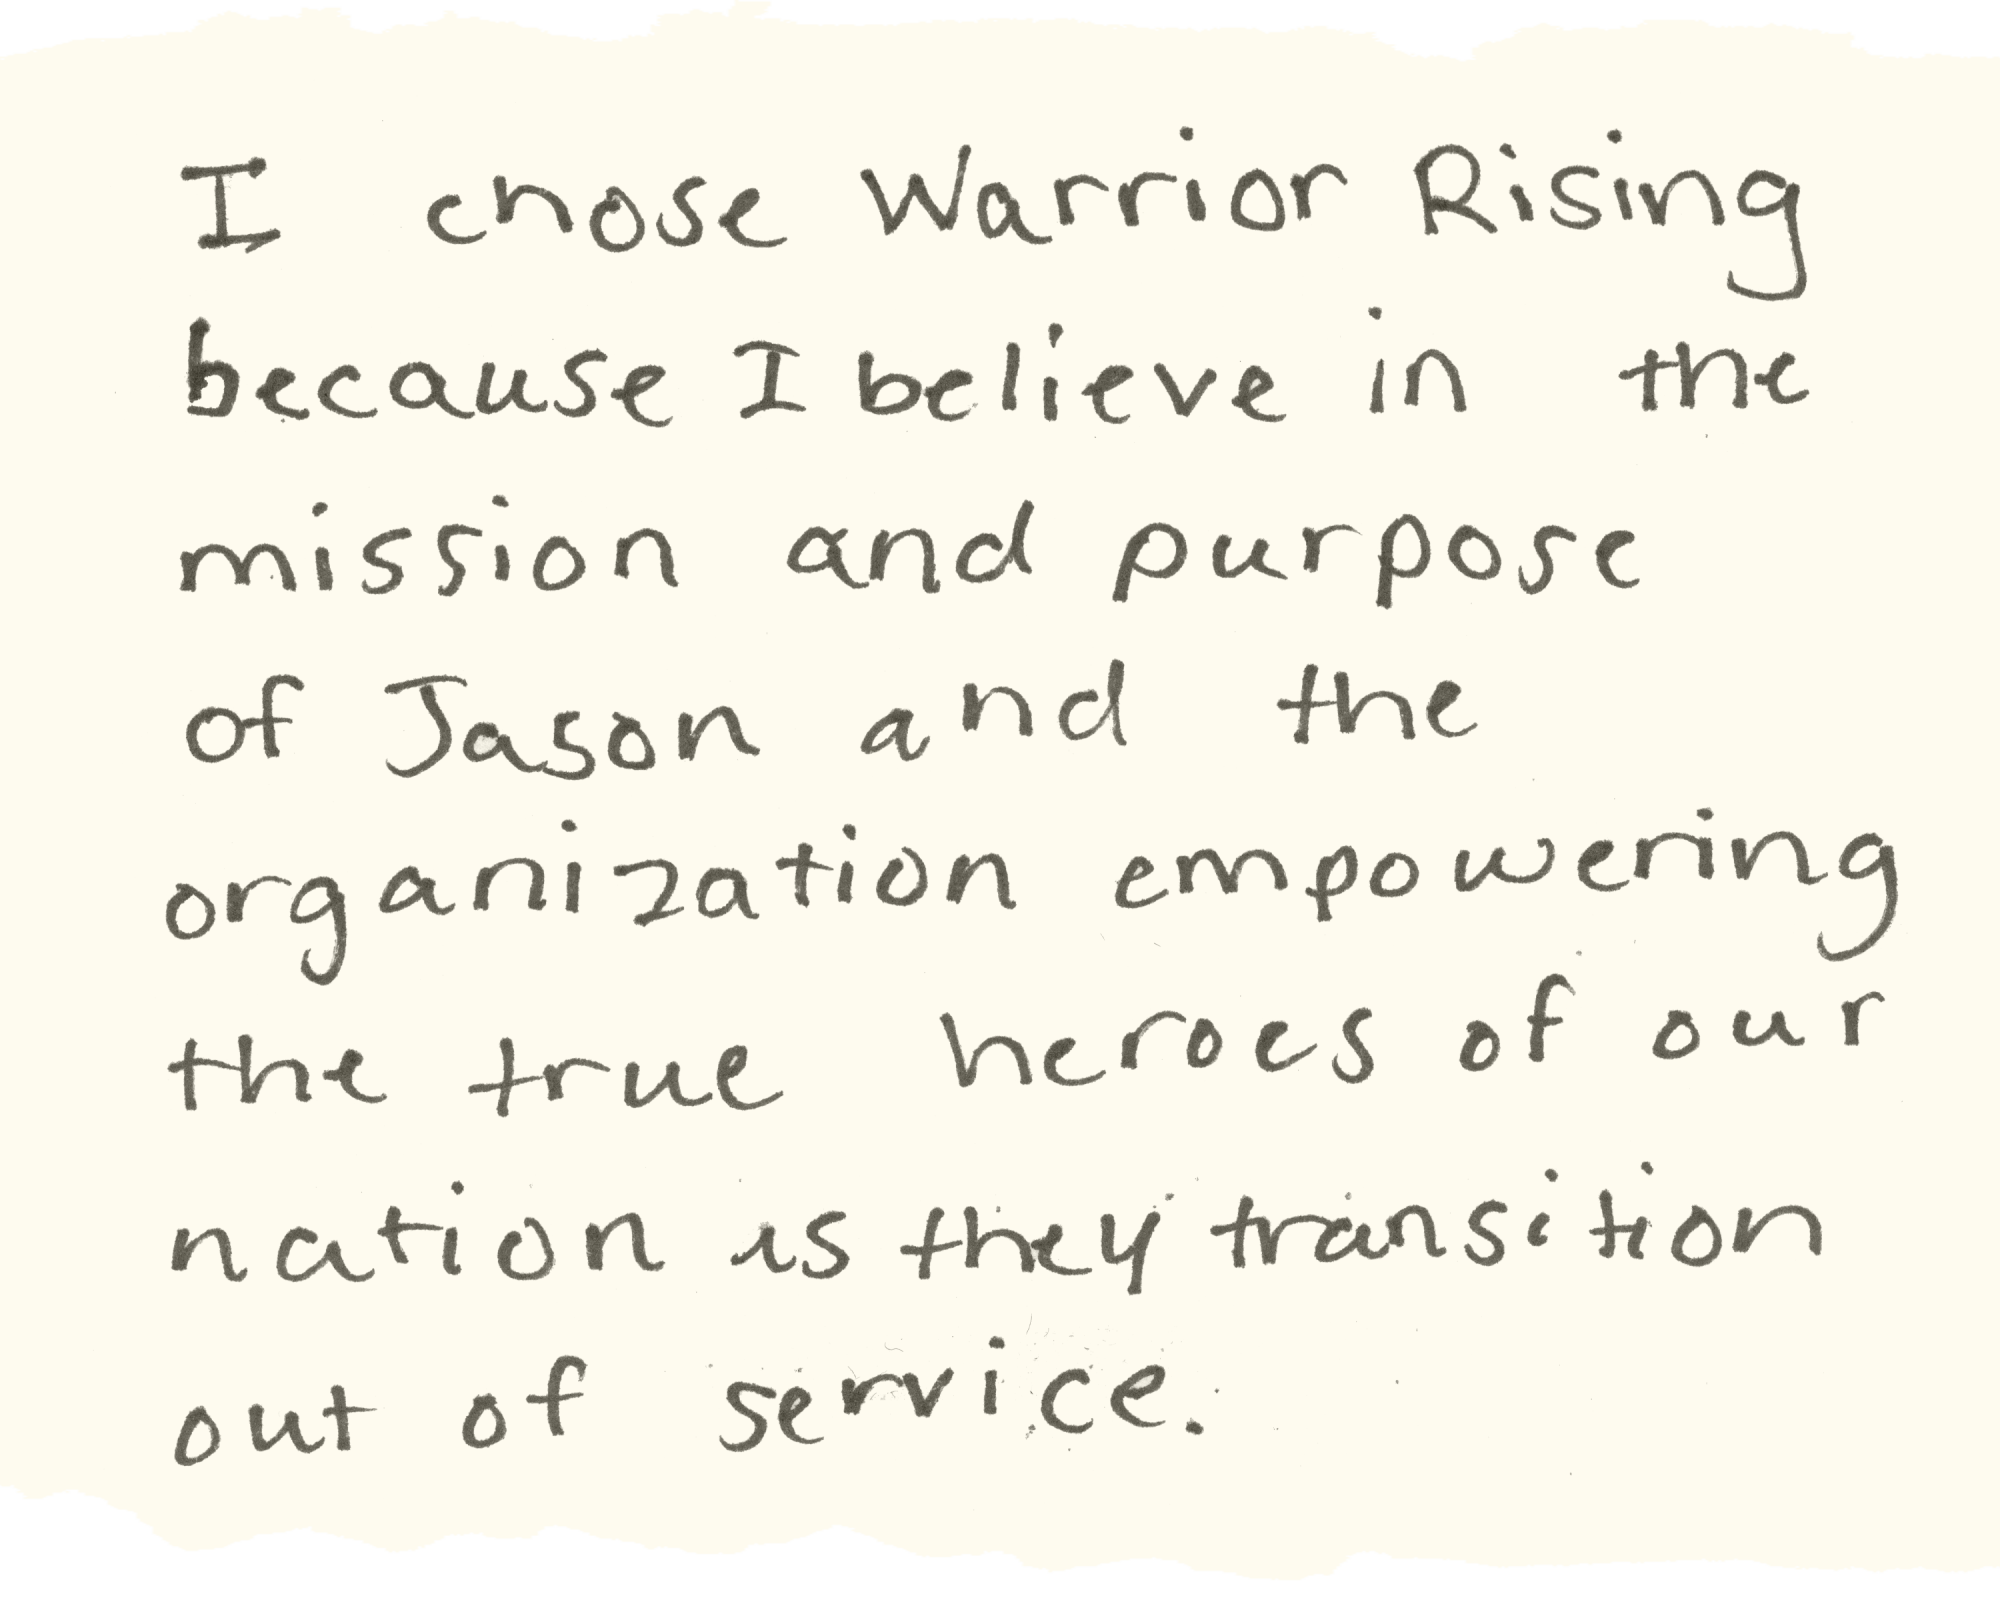 Ich habe mich für Warrior Rising entschieden, weil ich an die Mission und den Zweck glaube … die wahren Helden unserer Nation zu stärken